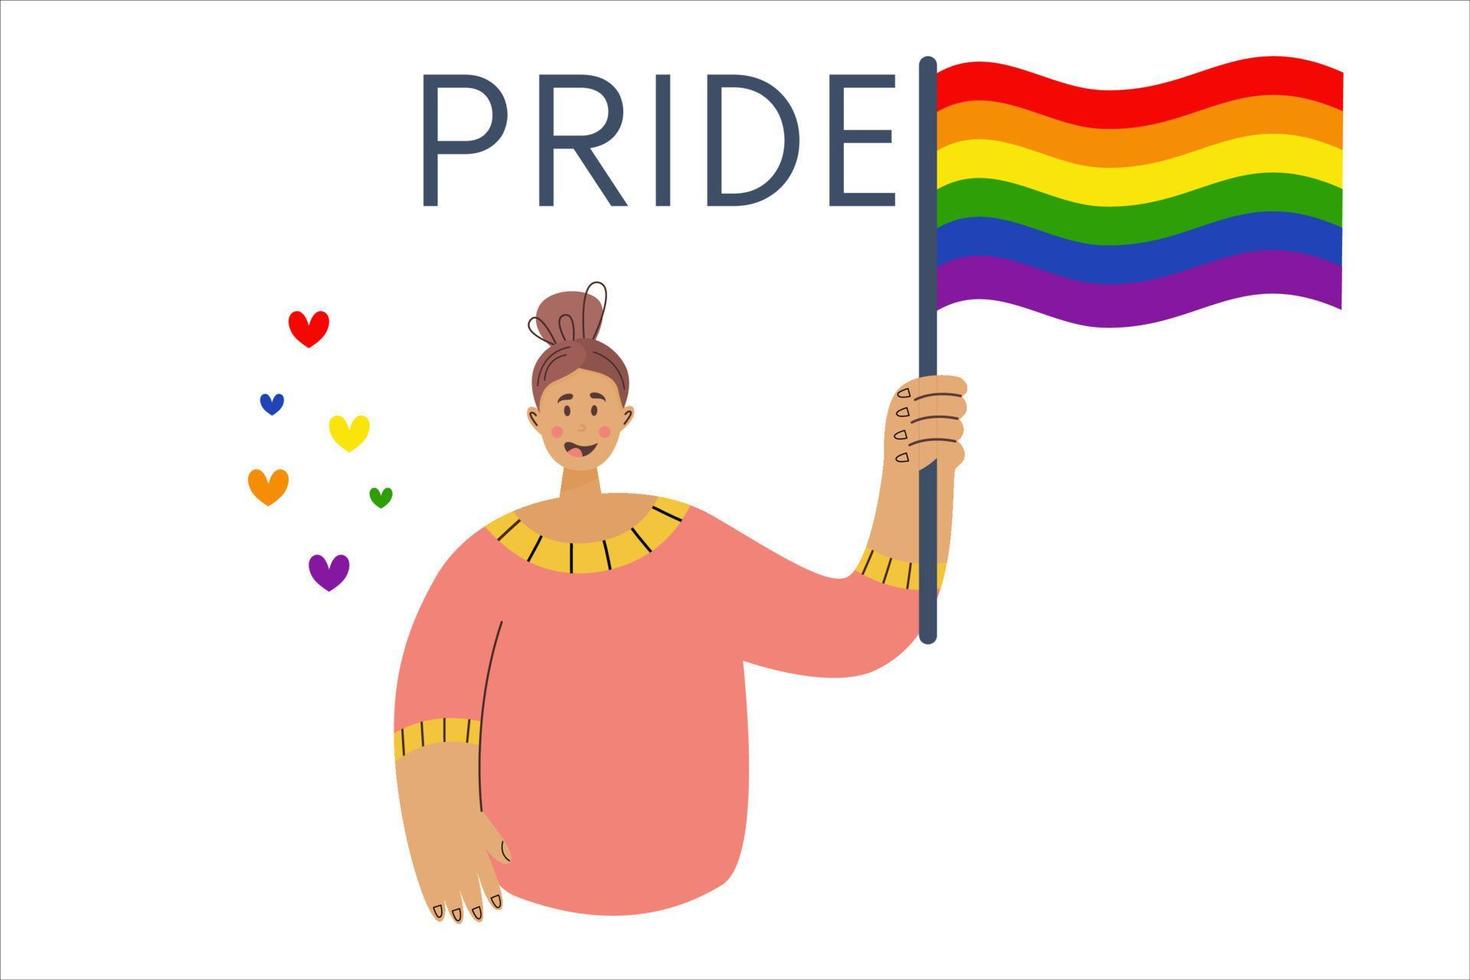 månad av parad. flicka håller flaggan i hbt-färger. platt vektorillustration. lesbisk gay bisexuell transperson vid paraden. begreppsmångfald vektor